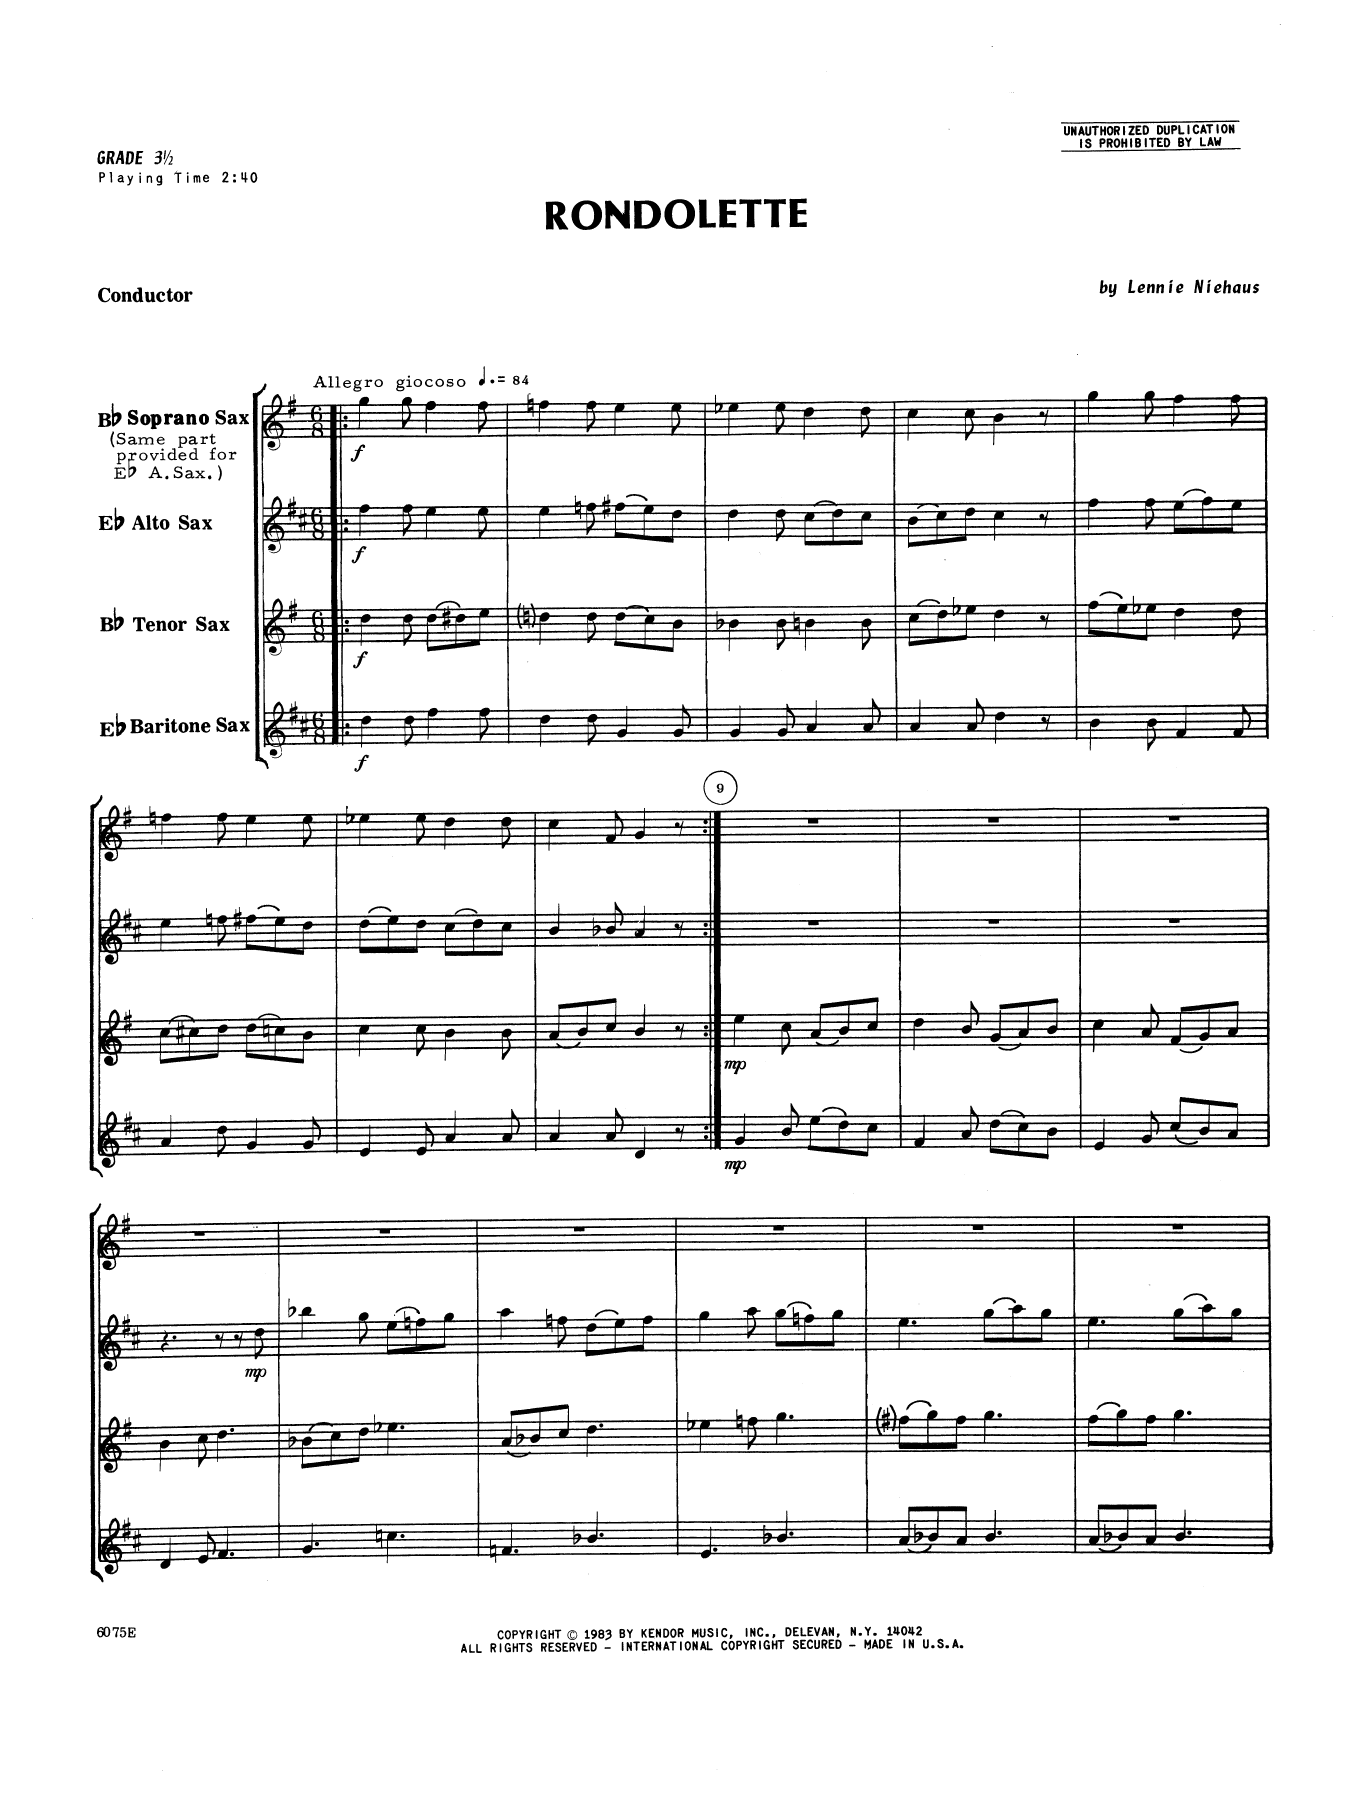 Rondolette - Full Score (Woodwind Ensemble) von Lennie Niehaus